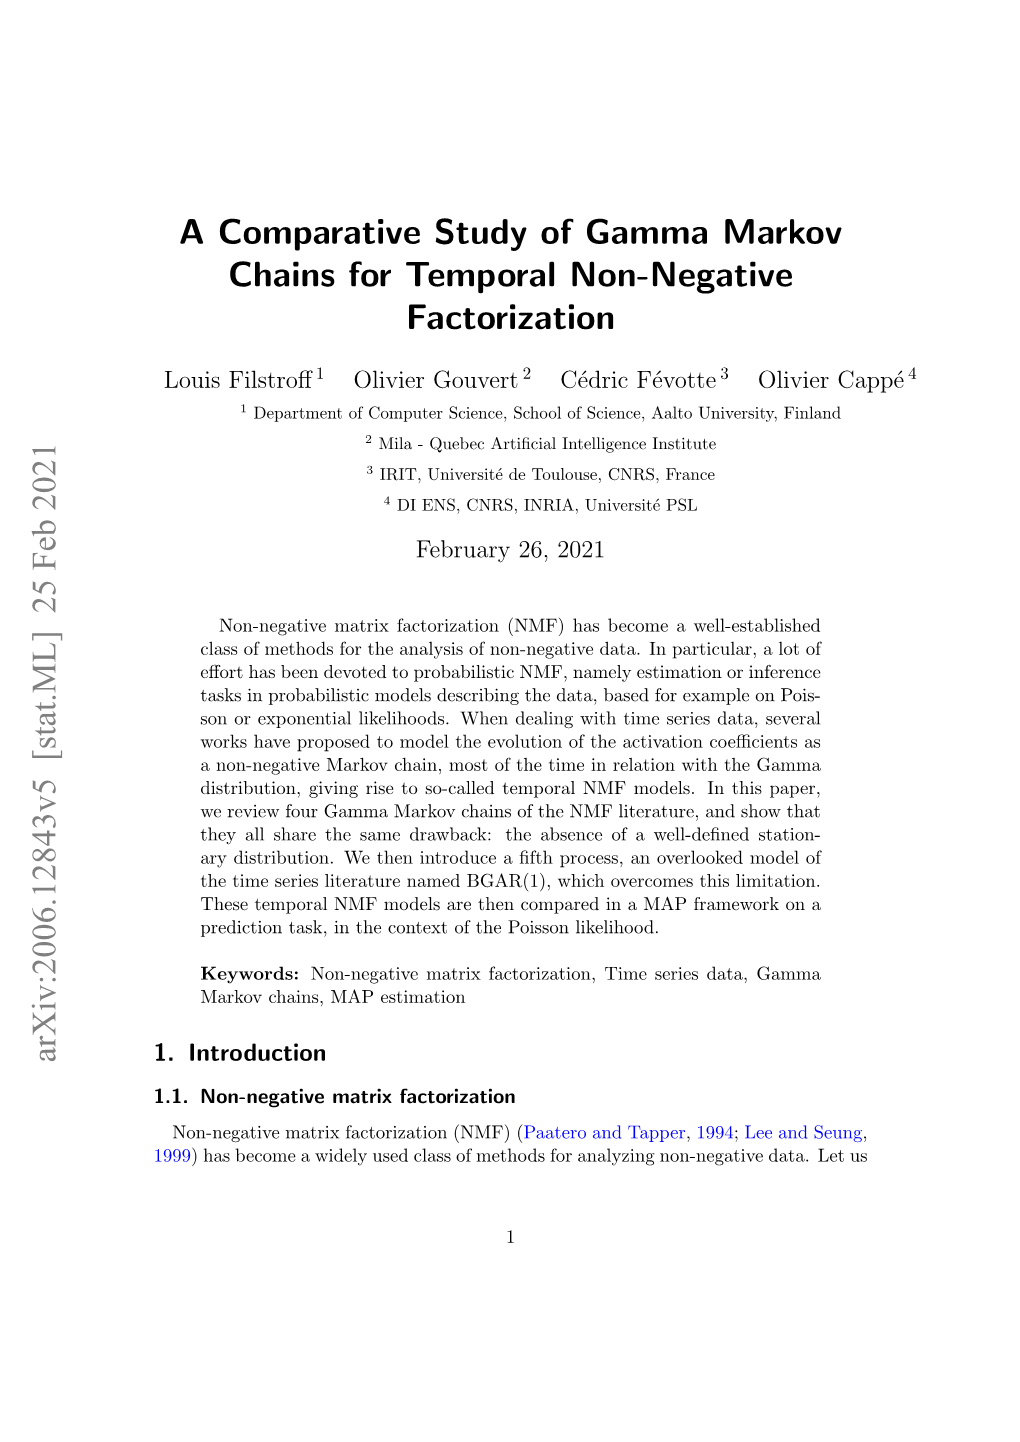 A Comparative Study of Gamma Markov Chains for Temporal Non-Negative Factorization Arxiv:2006.12843V5 [Stat.ML] 25 Feb 2021